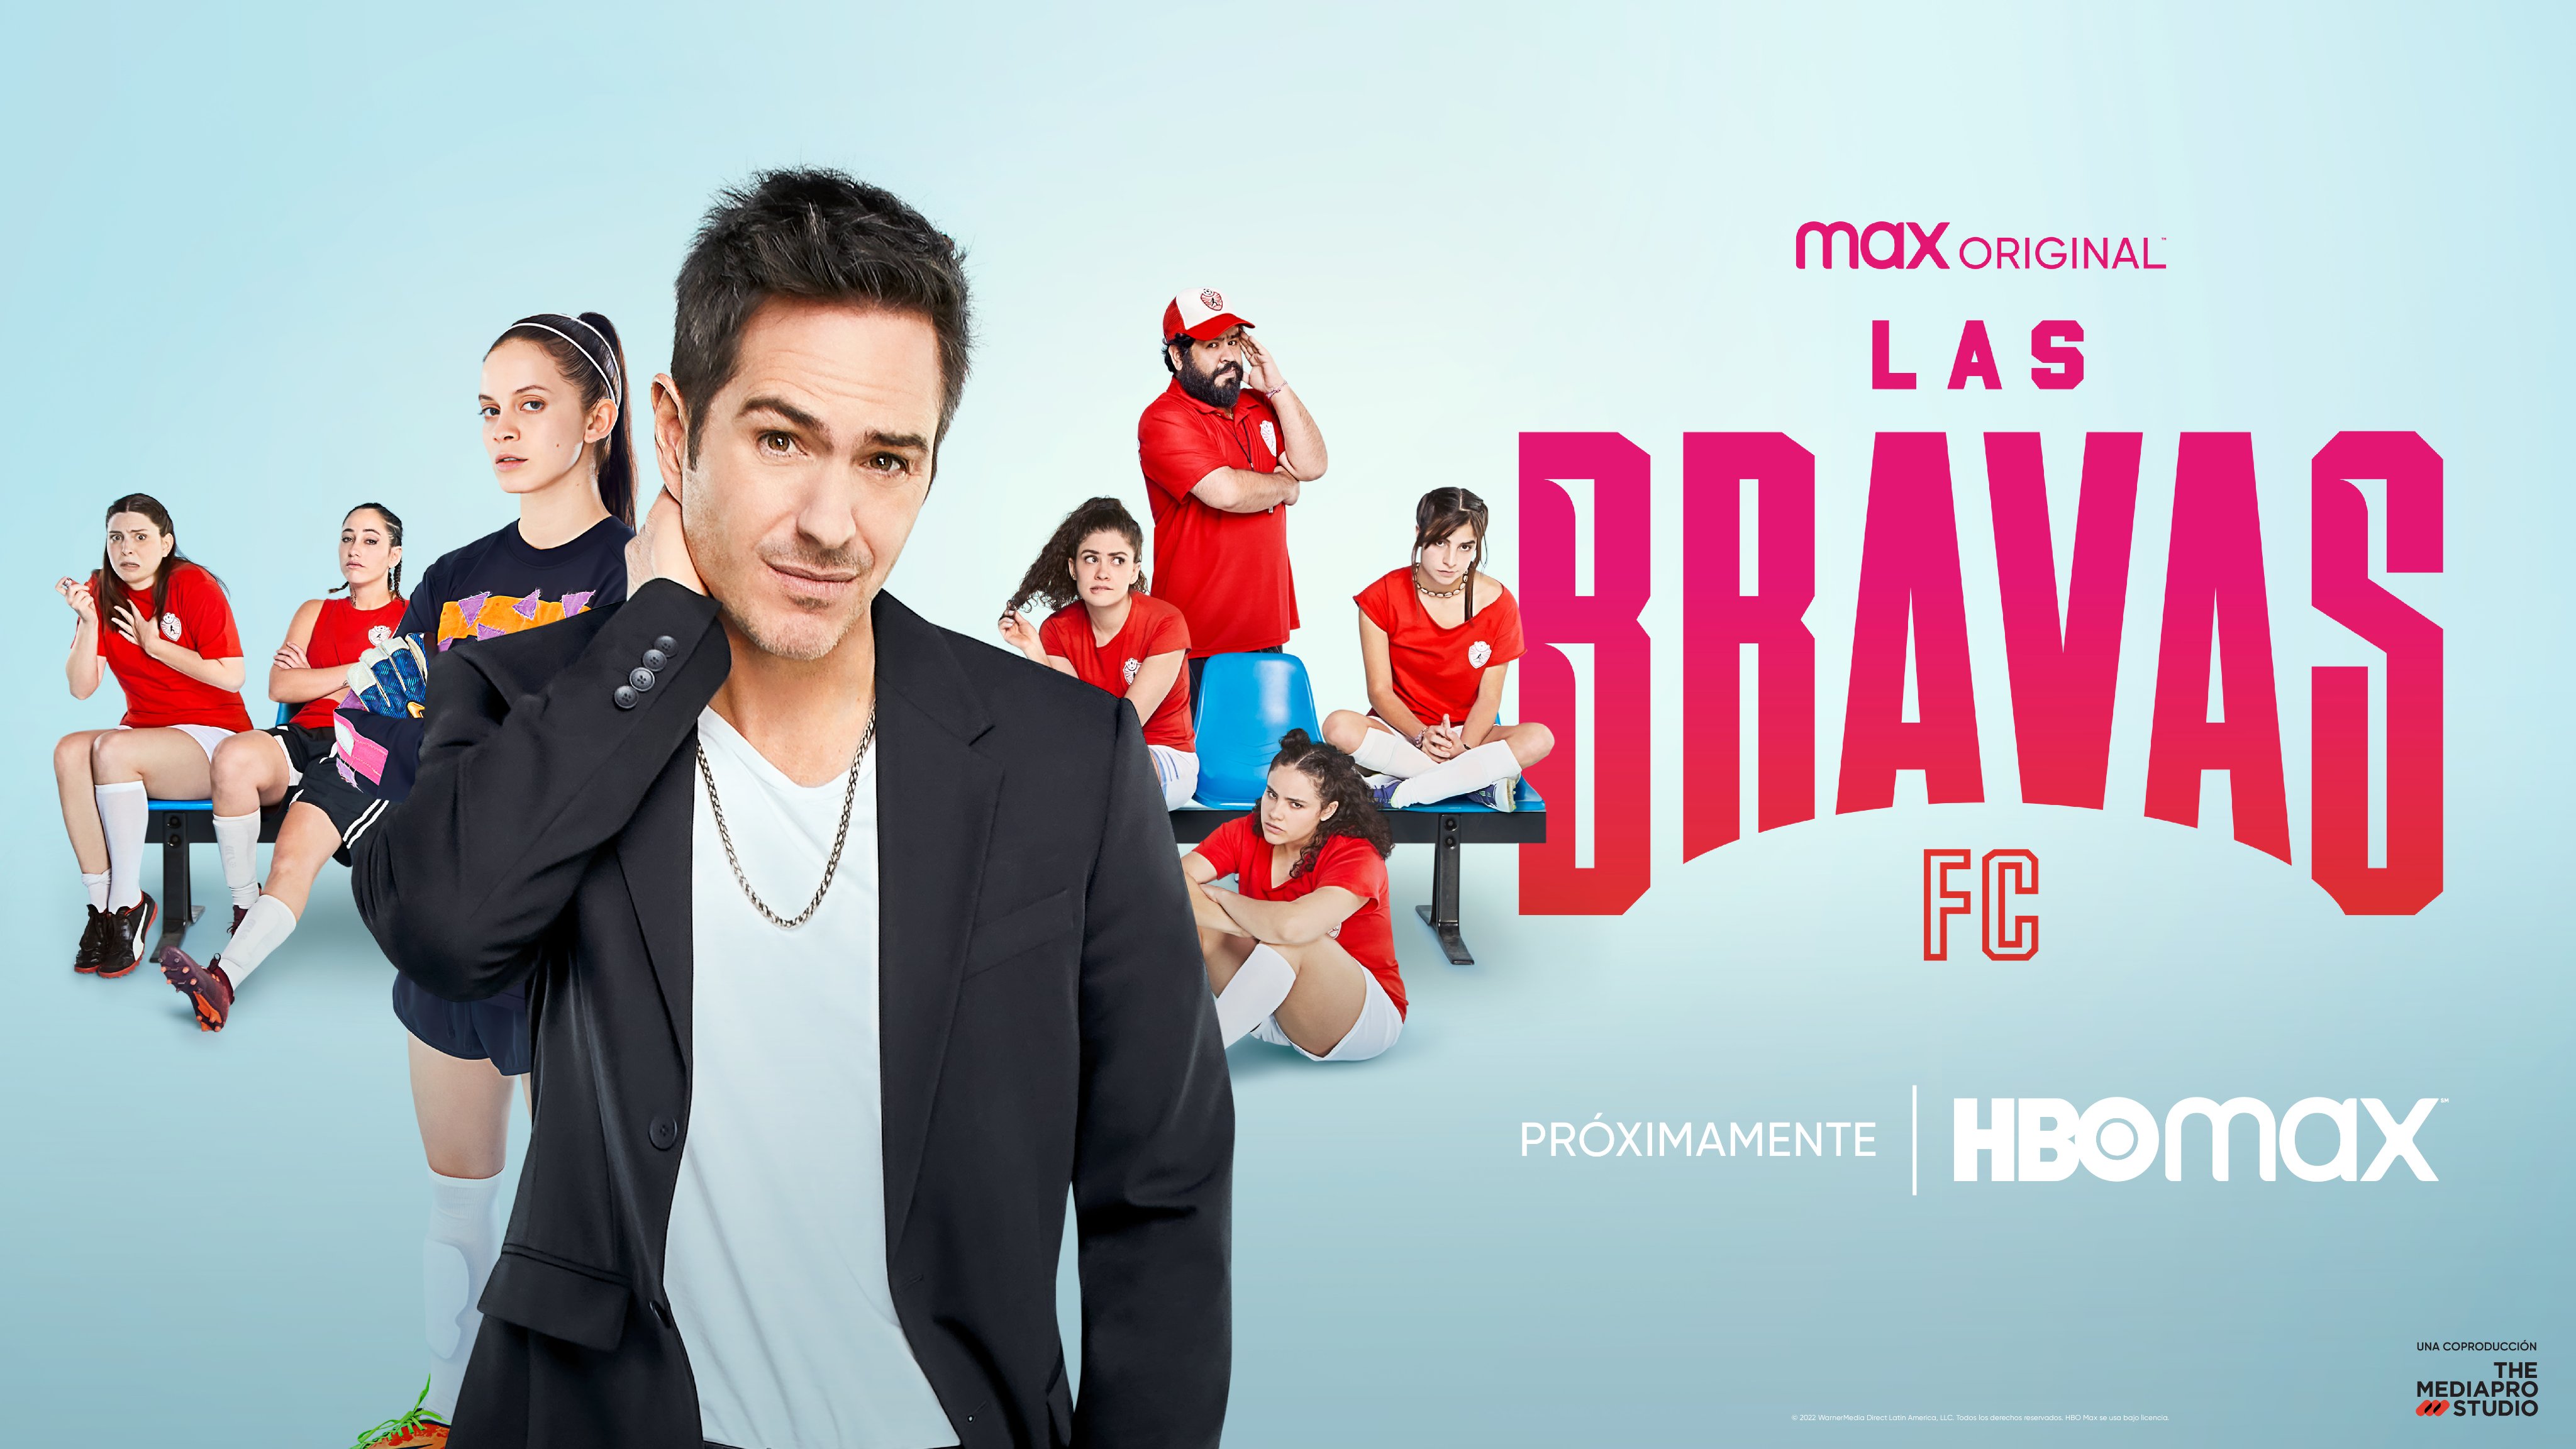 Las Bravas FC': La serie que rompe estereotipos con una comedia ingeniosa  de HBO MAX - Noticias de series - SensaCine.com.mx